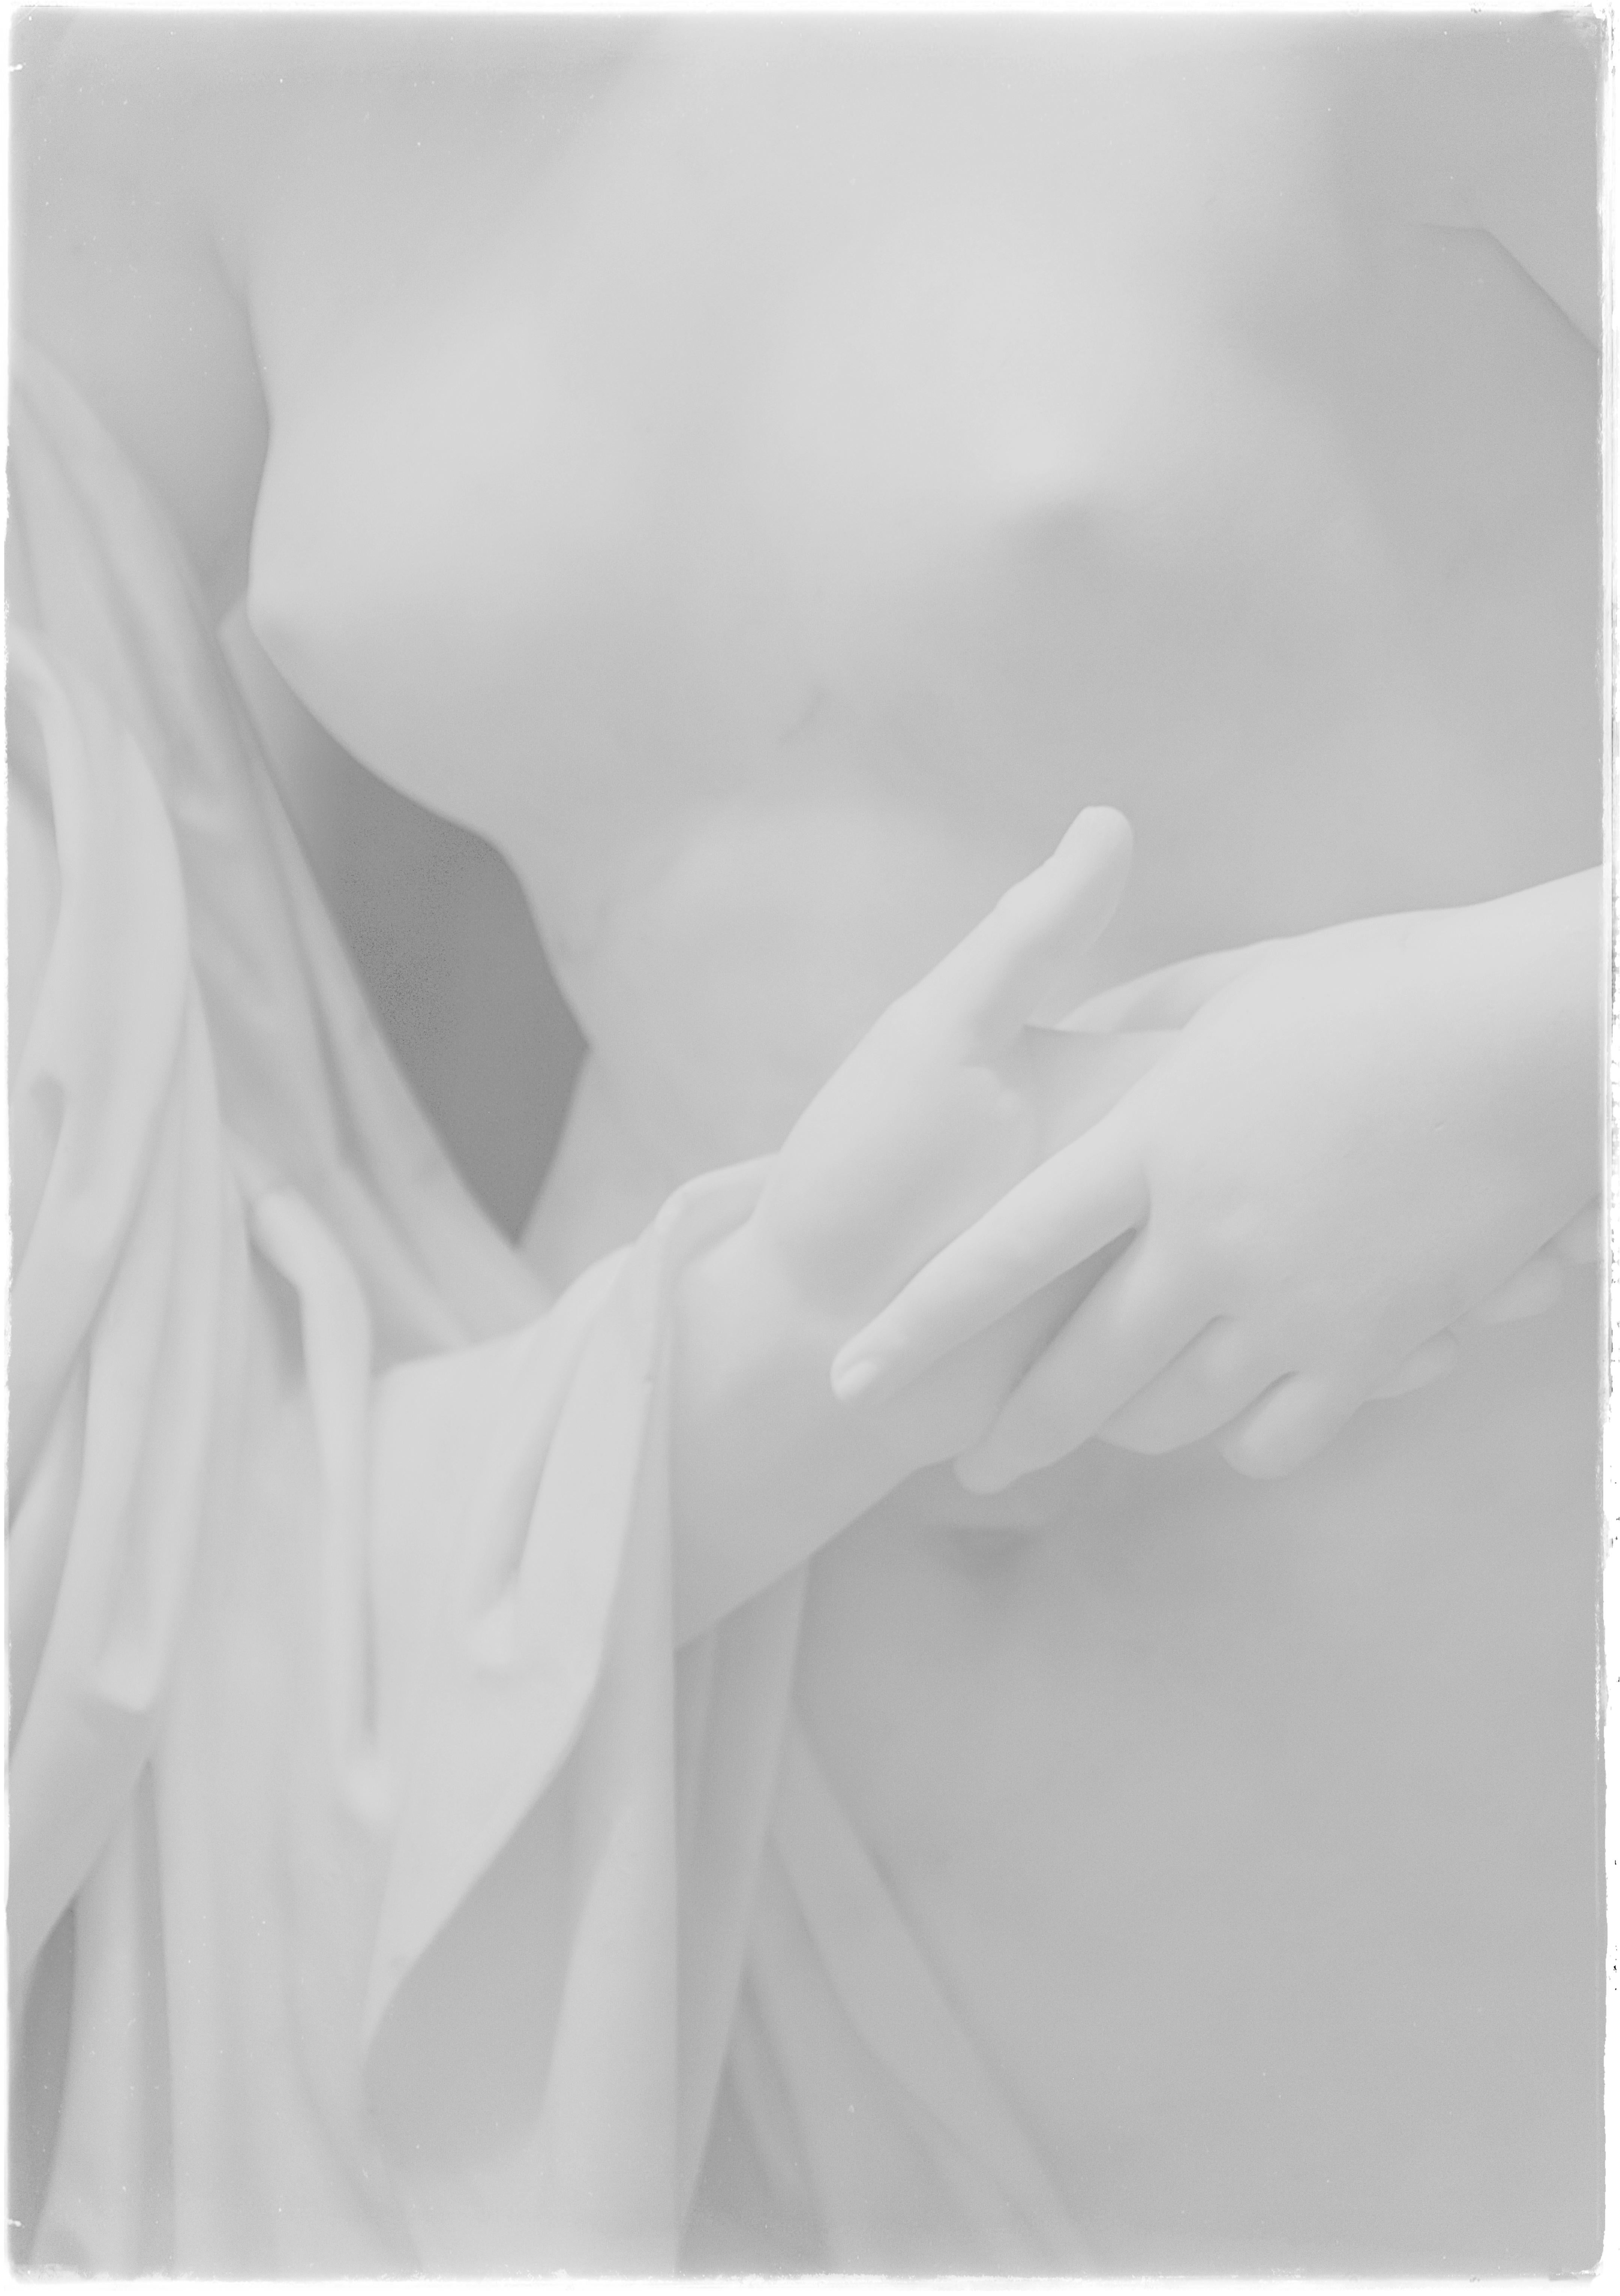 Ugne Pouwell Still-Life Photograph – Hand in Hand - Schwarz-Weiß-Fotografie mit weiblicher Marmorfigur